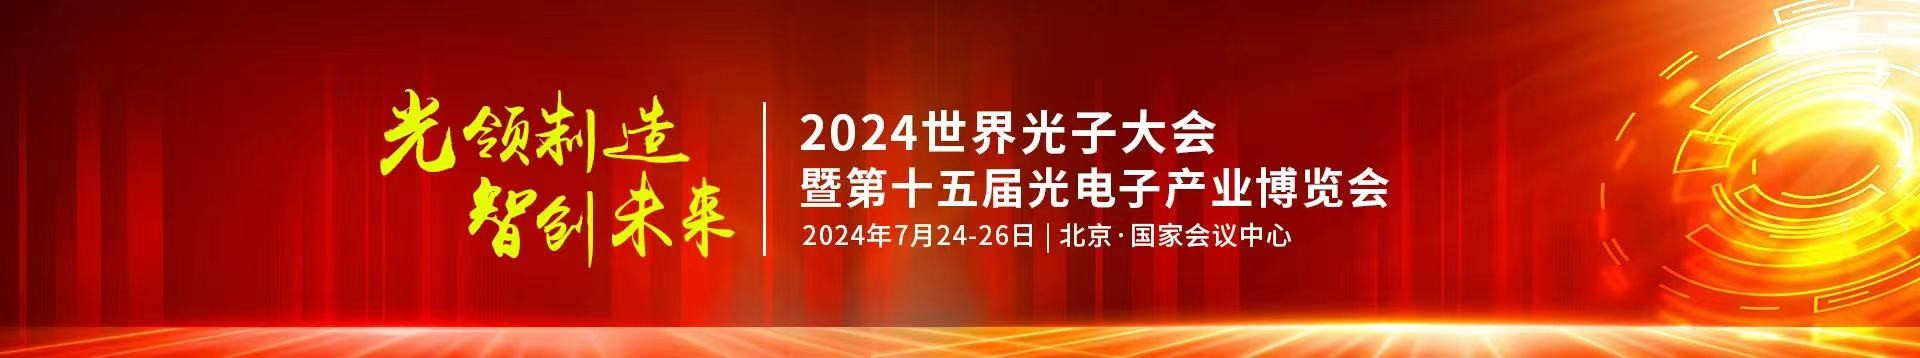 要玩就玩最好的5197新蔺京公司受邀参加2024年第十五届光电子产业博览会